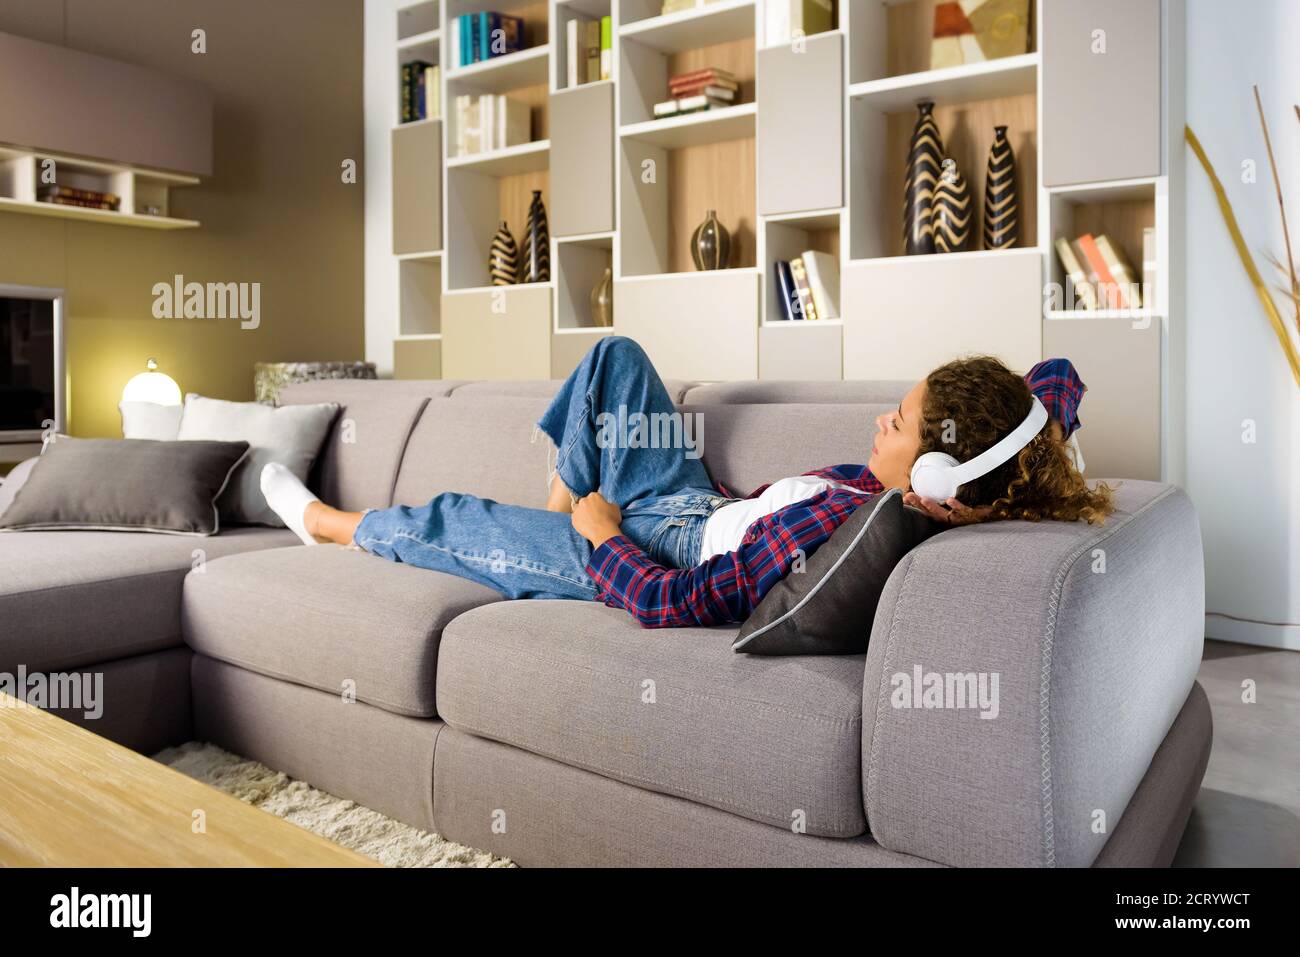 Junge Frau, die sich im Wohnzimmer oder im Familienzimmer entspannt Zuhause auf einem Sofa Musik hören auf Stereo-Kopfhörer Stockfoto